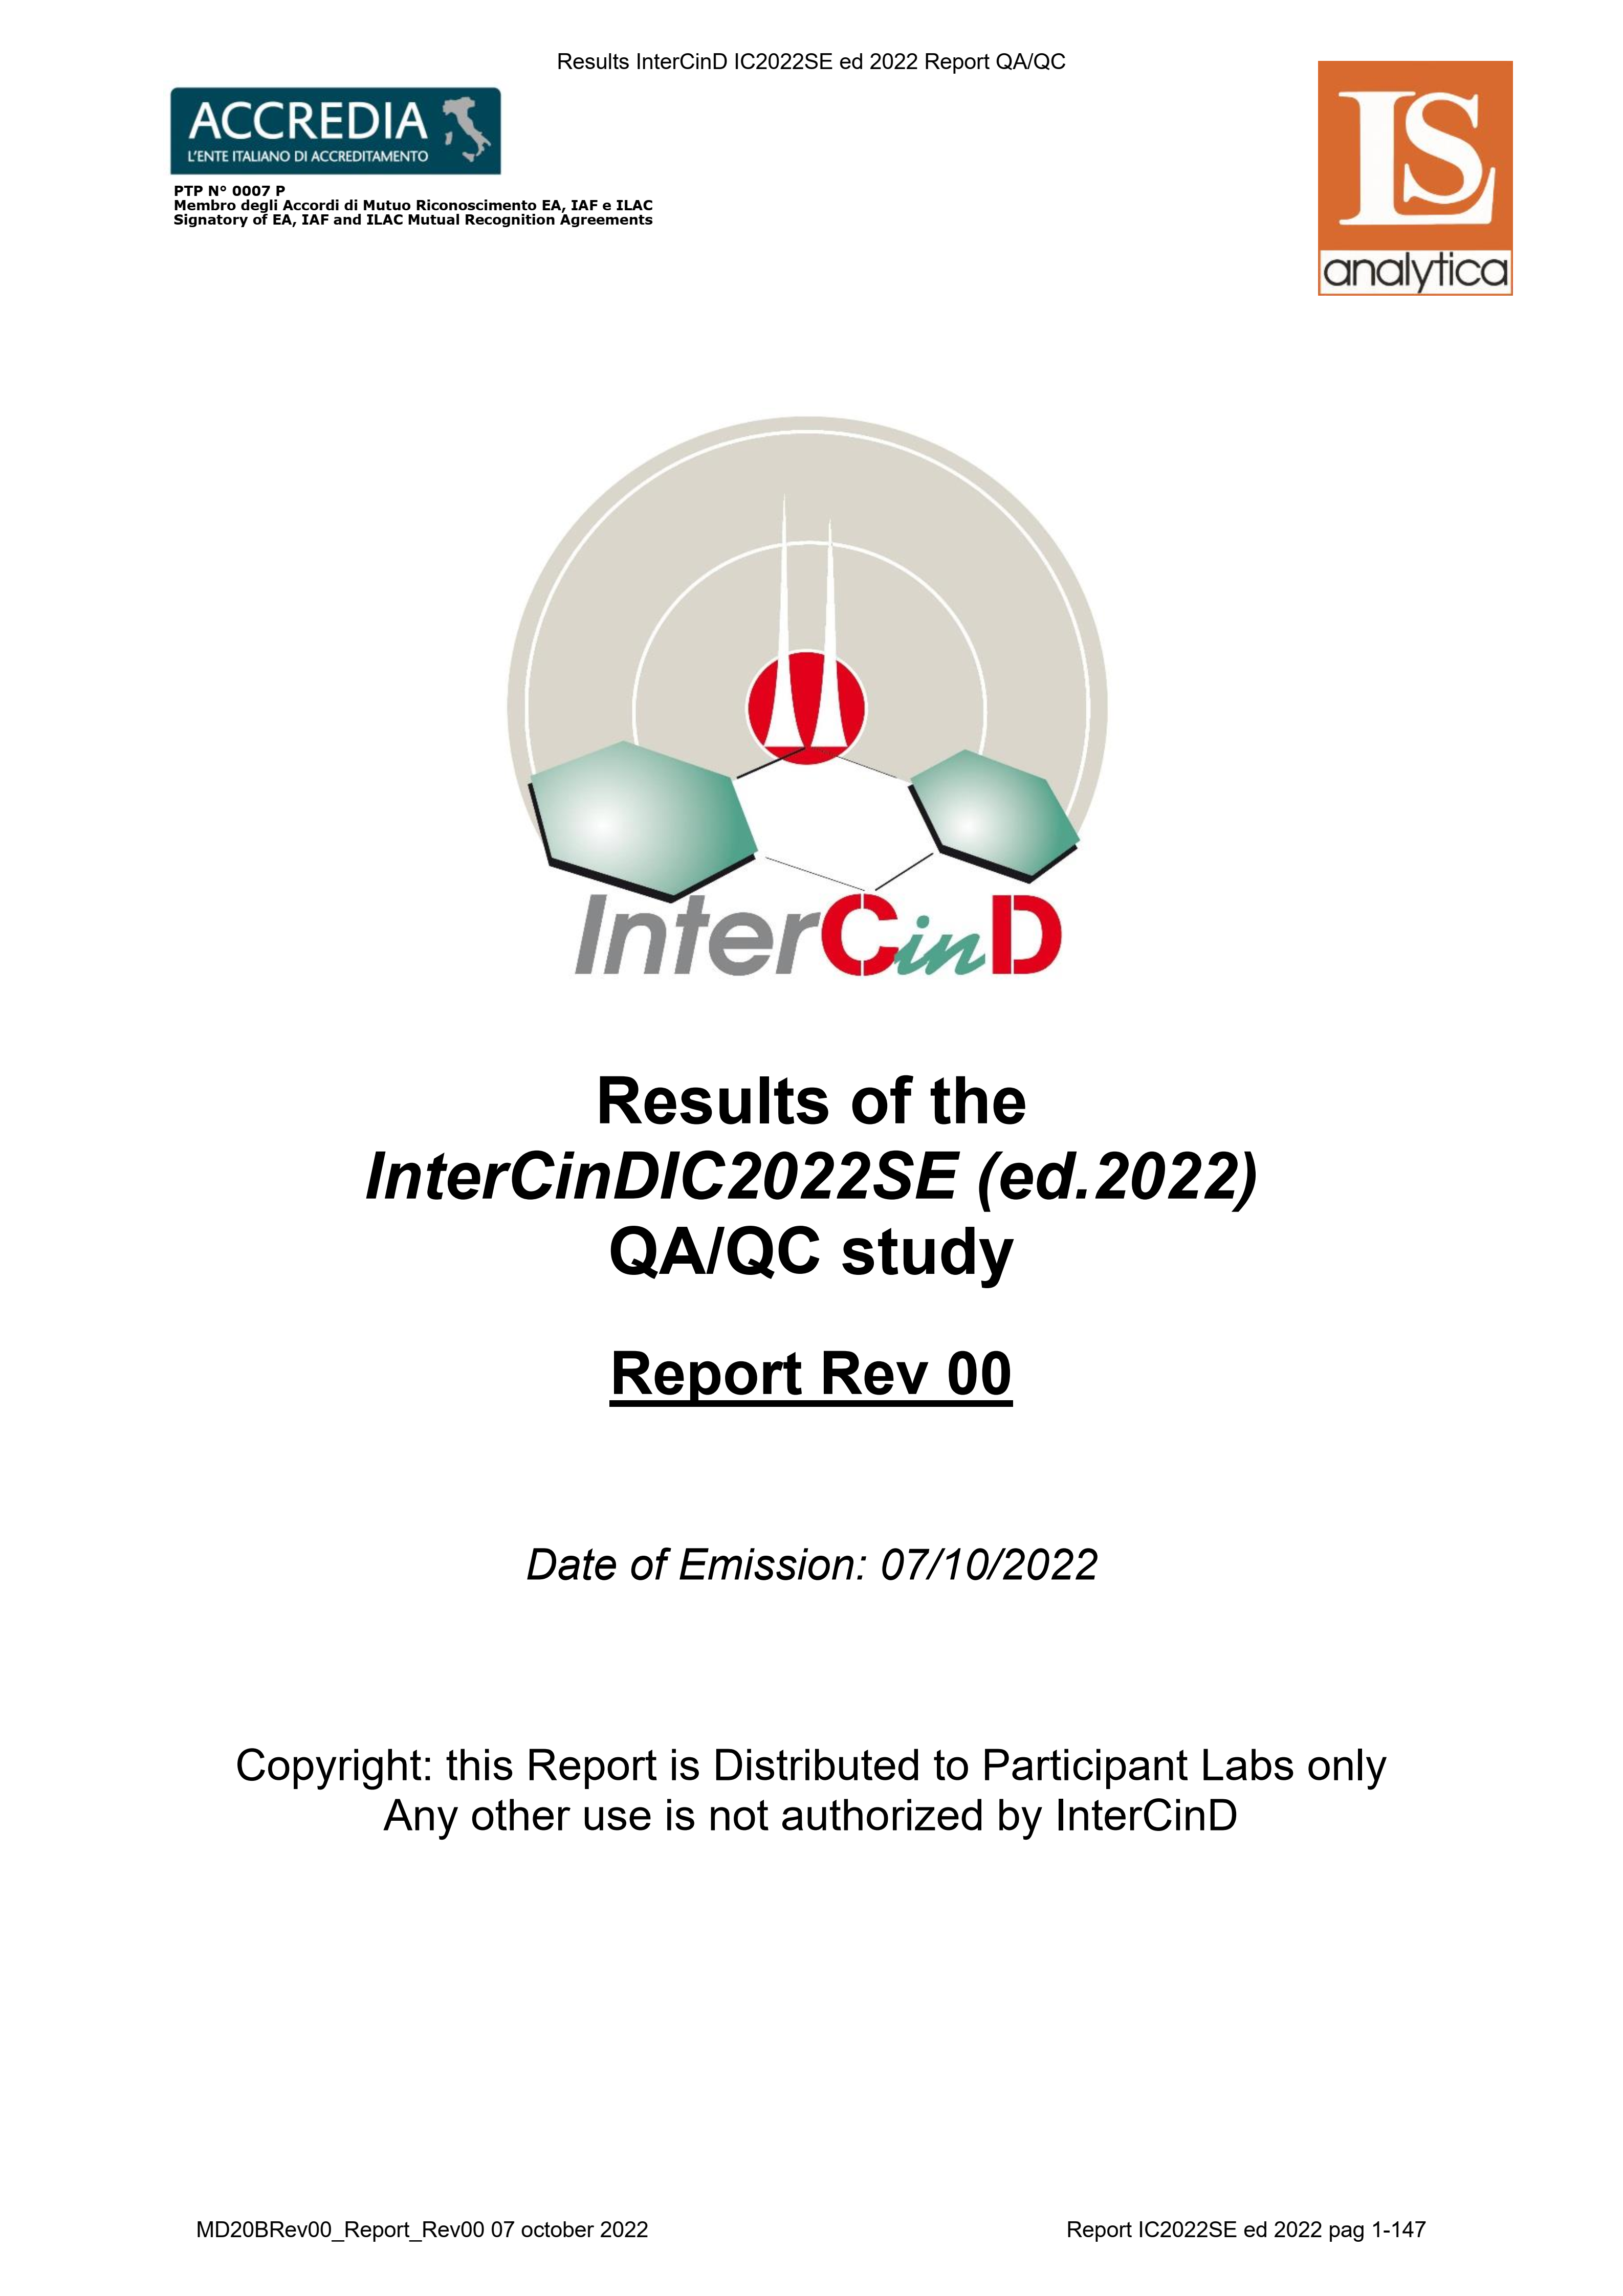 Phòng thí nghiệm Phân viện Hóa-Môi trường đạt kết quả cao trong chương trình liên kết chuẩn quốc tế năm 2022 về phân tích dioxin/furan và các chất “tương tự” dioxin do LabService Analytica SRL của Italy tổ chức